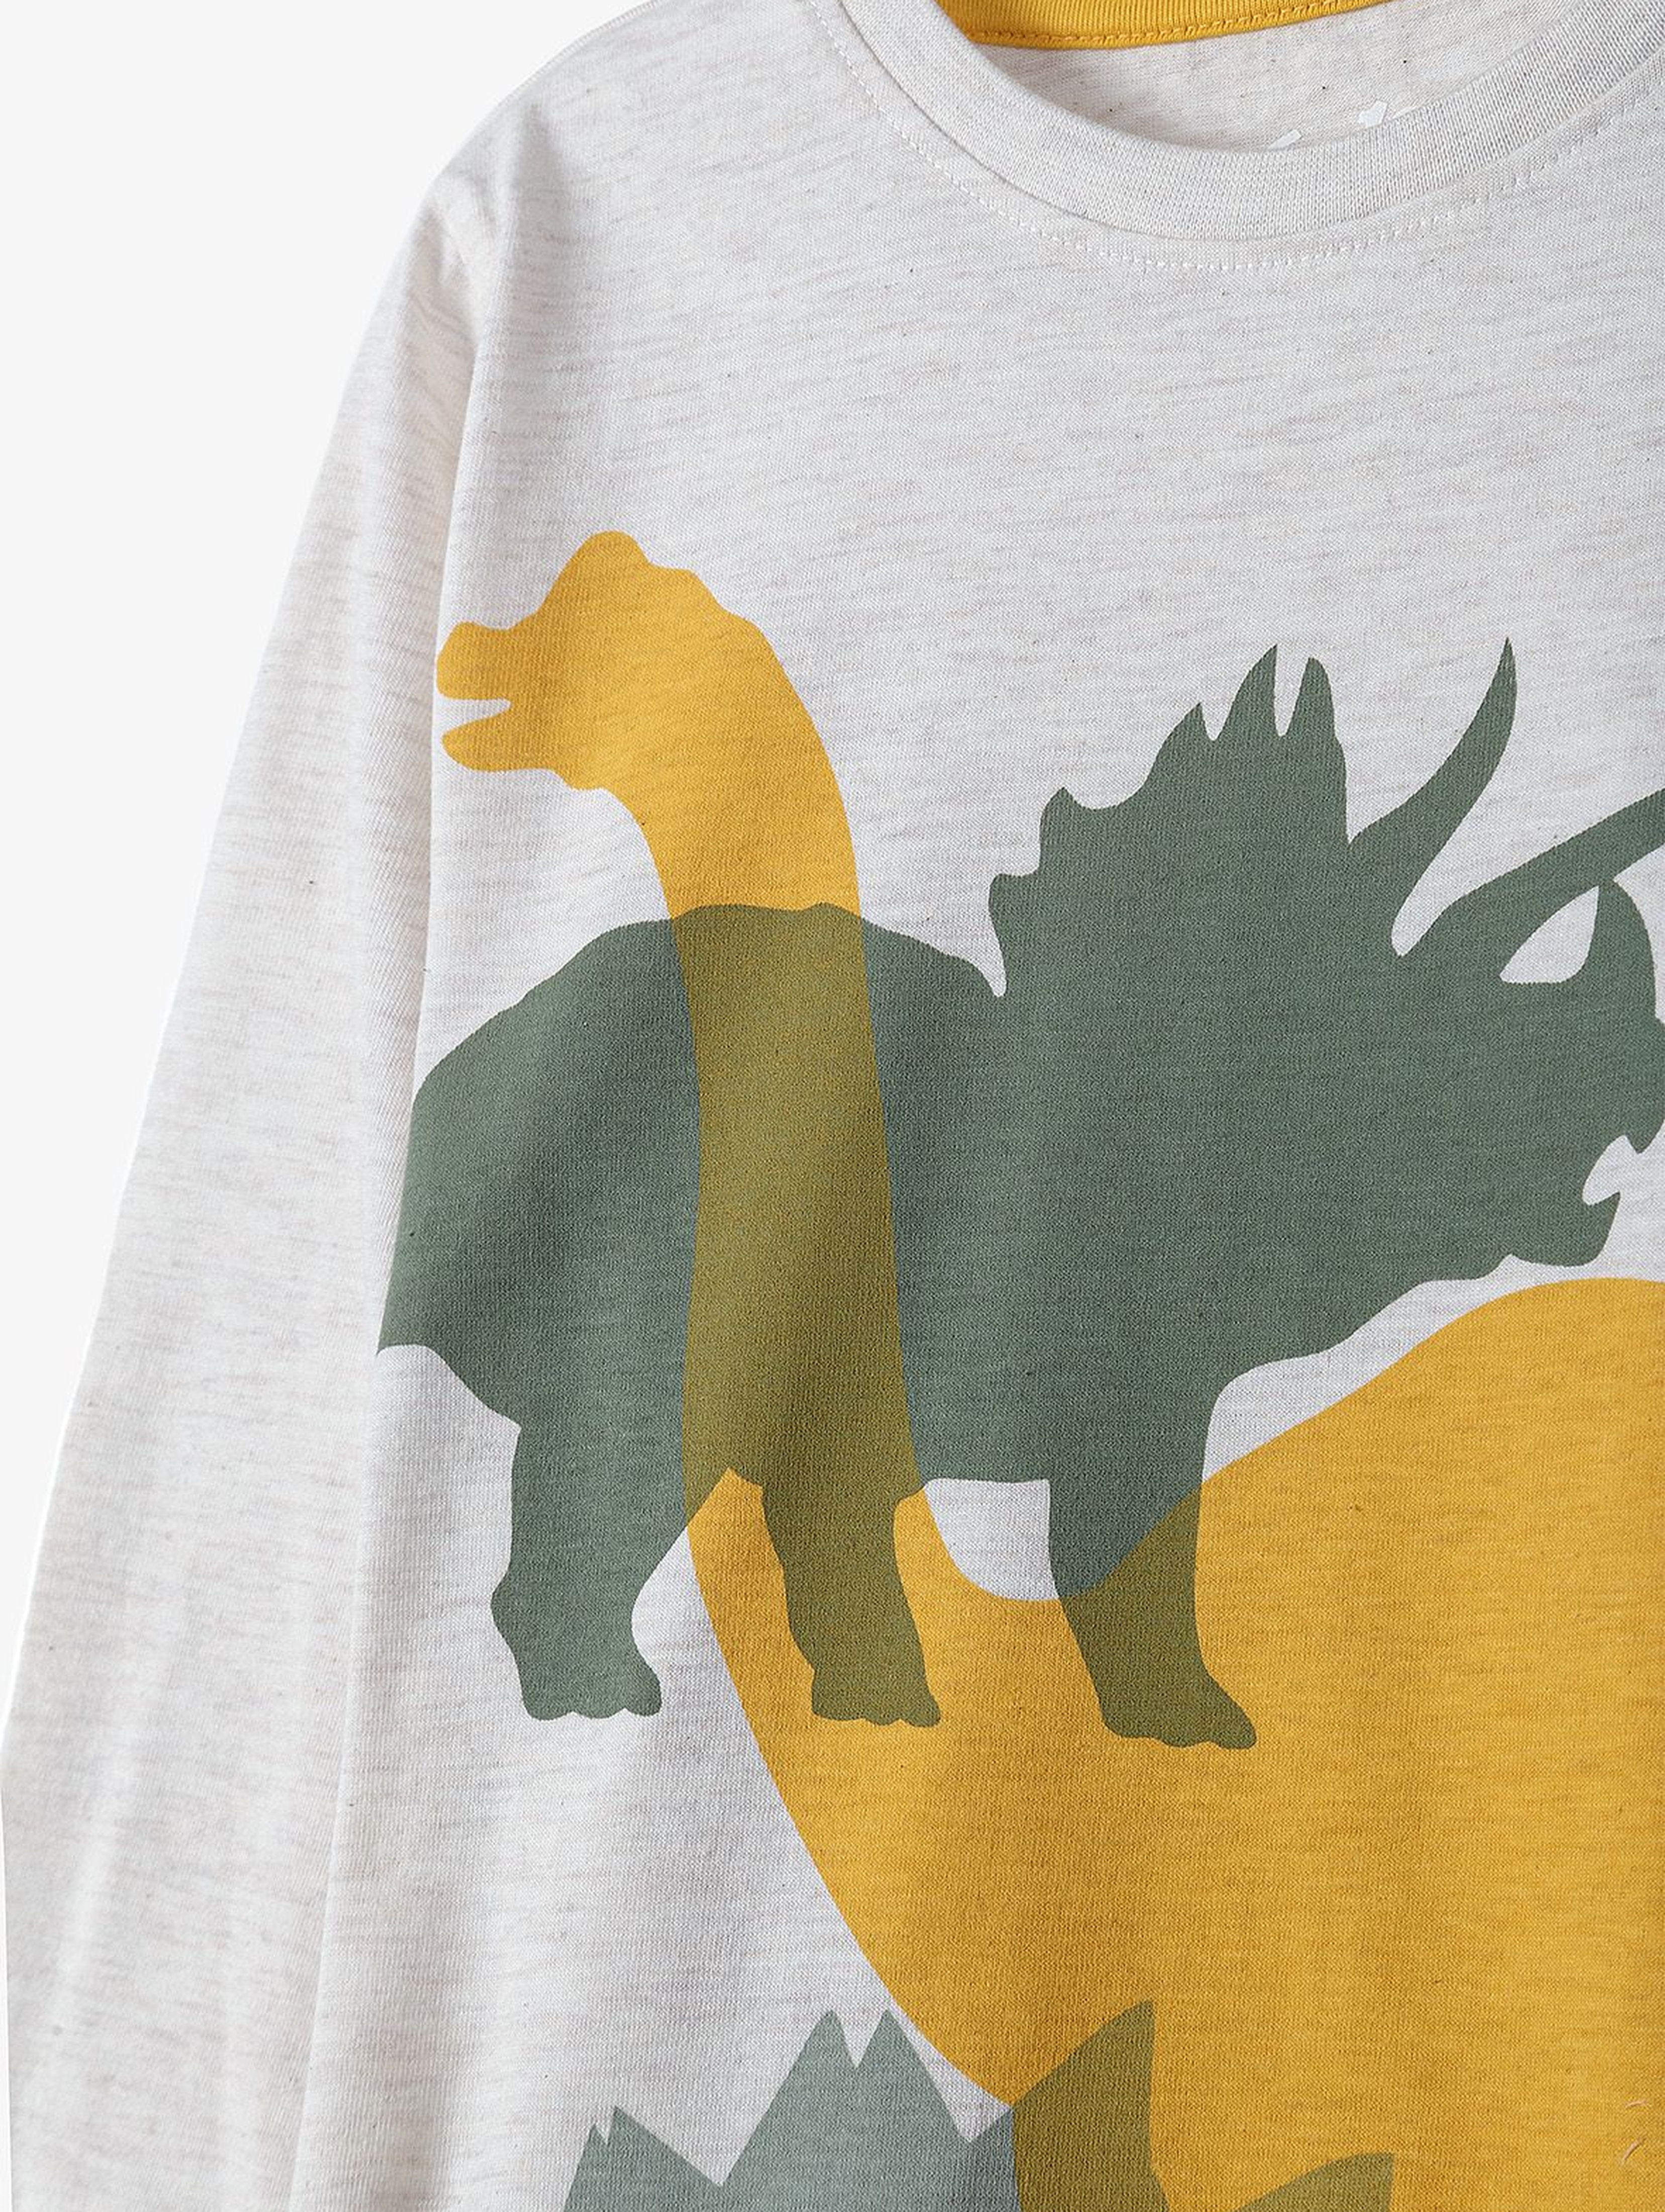 Bluzka chłopięca z długim rękawem w kolorze ecru- Dinozaury